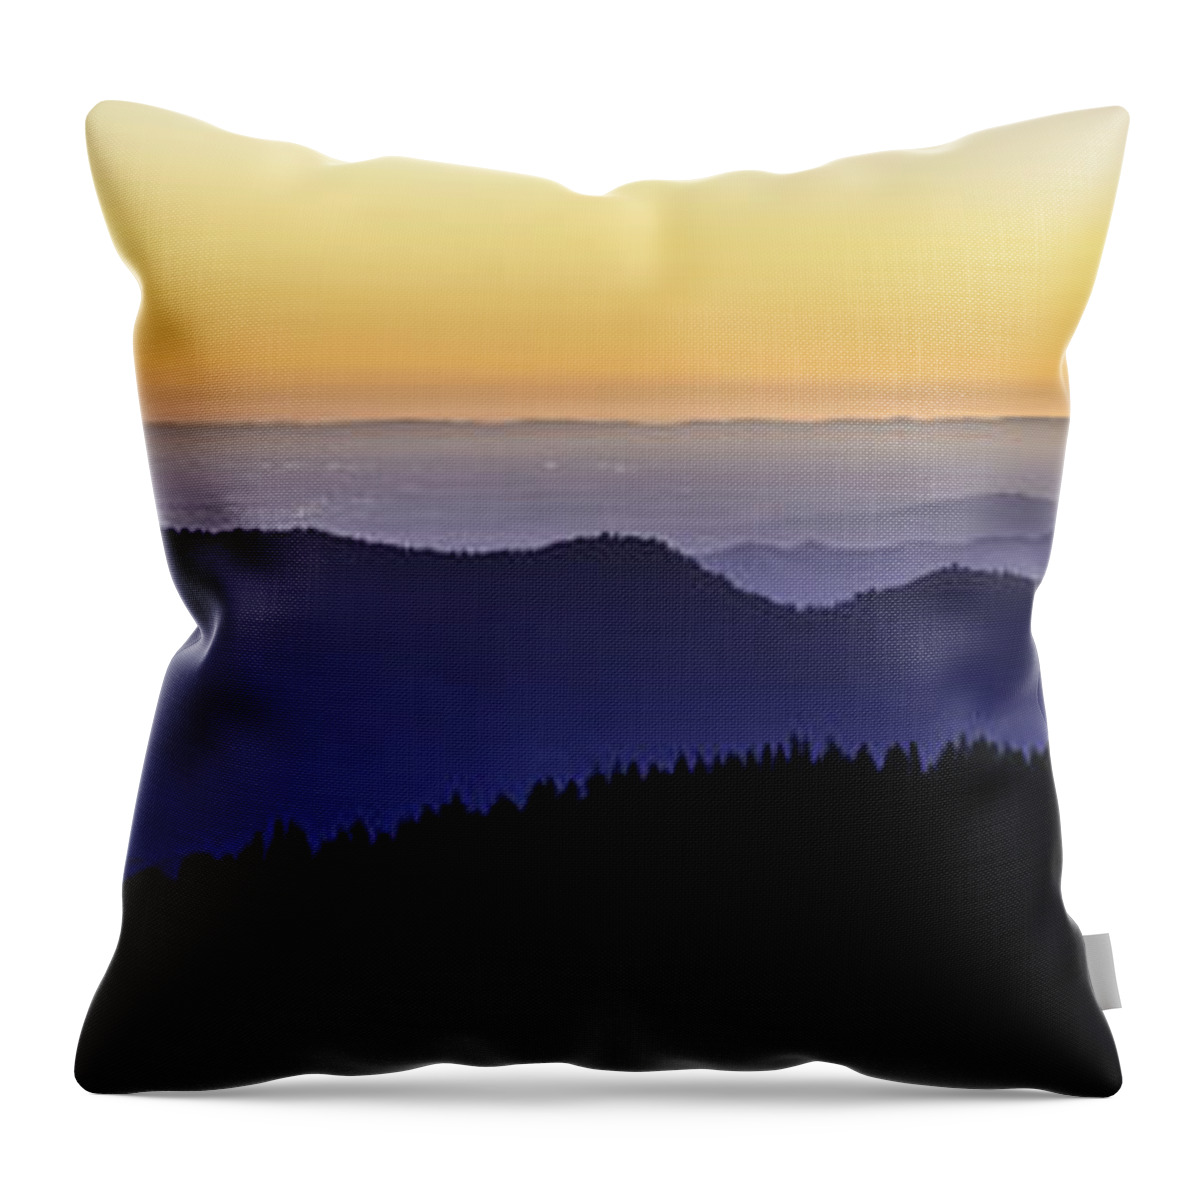 Central Valley Throw Pillow featuring the photograph San Joaquin Sunset by Matt Hammerstein